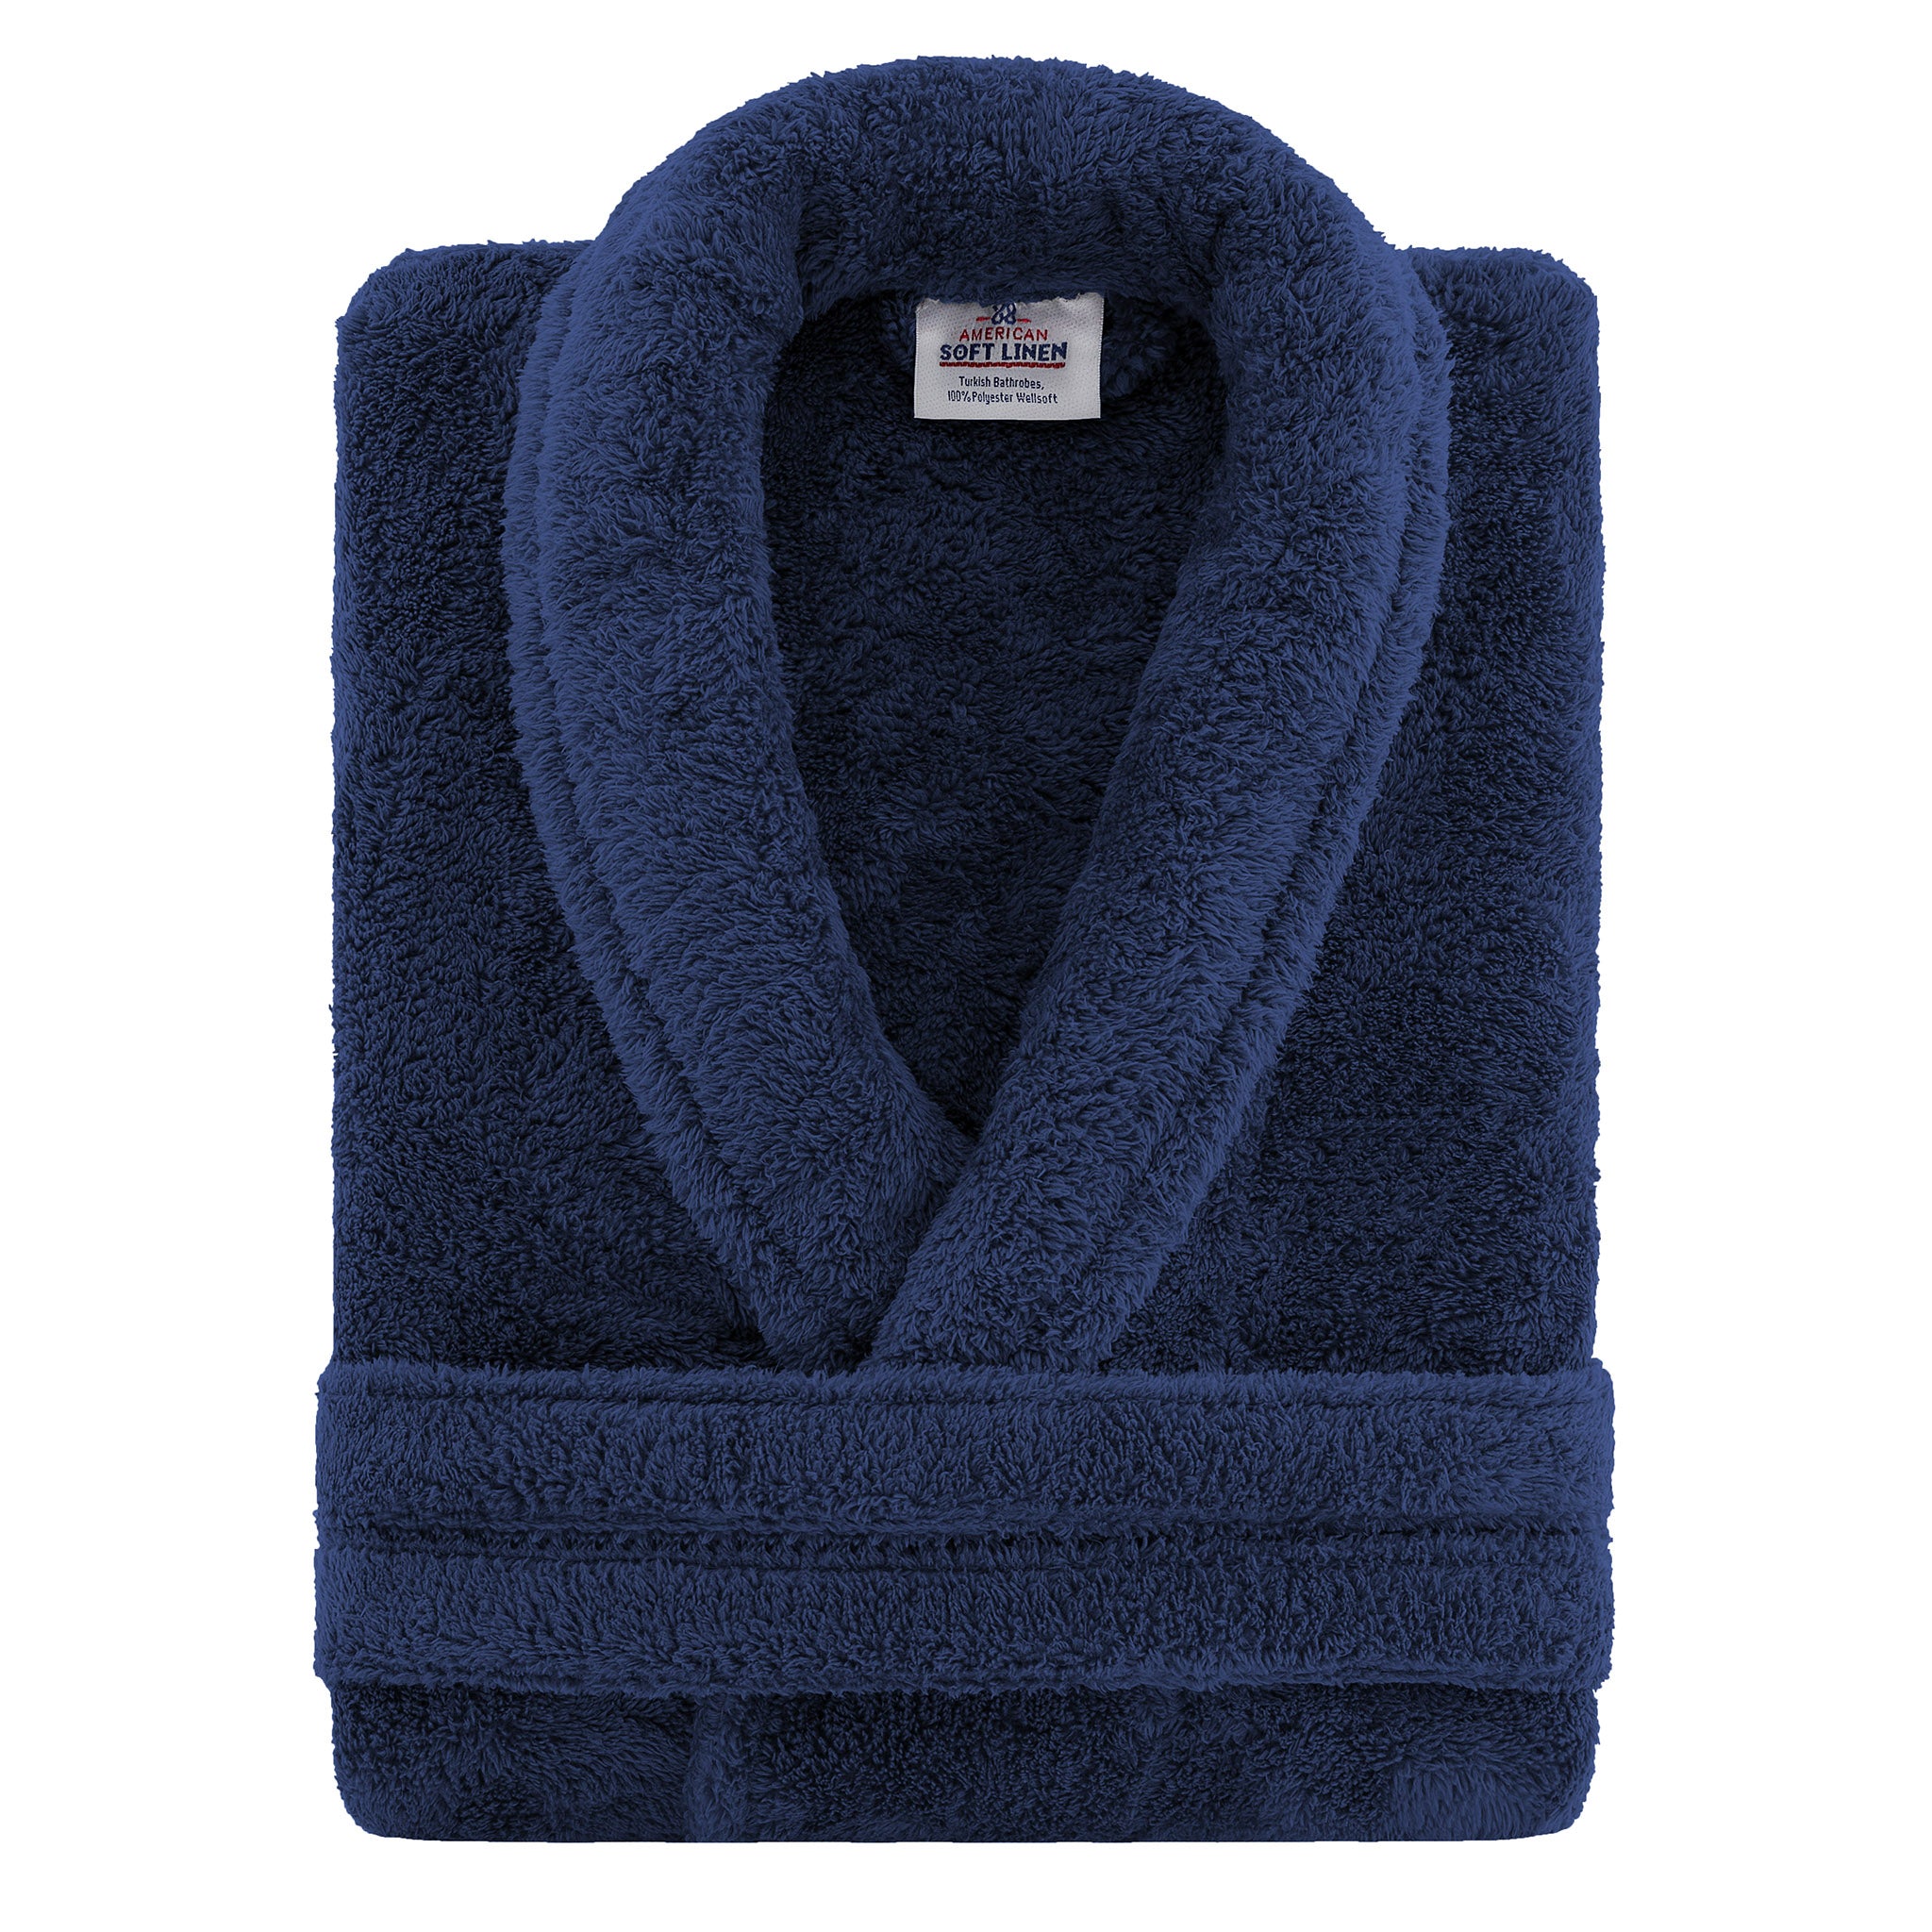 American Soft Linen Super Soft Absorbent and Fluffy Unisex Fleece Bathrobe -12 Set Case Pack -L-XL-navy-blue-3